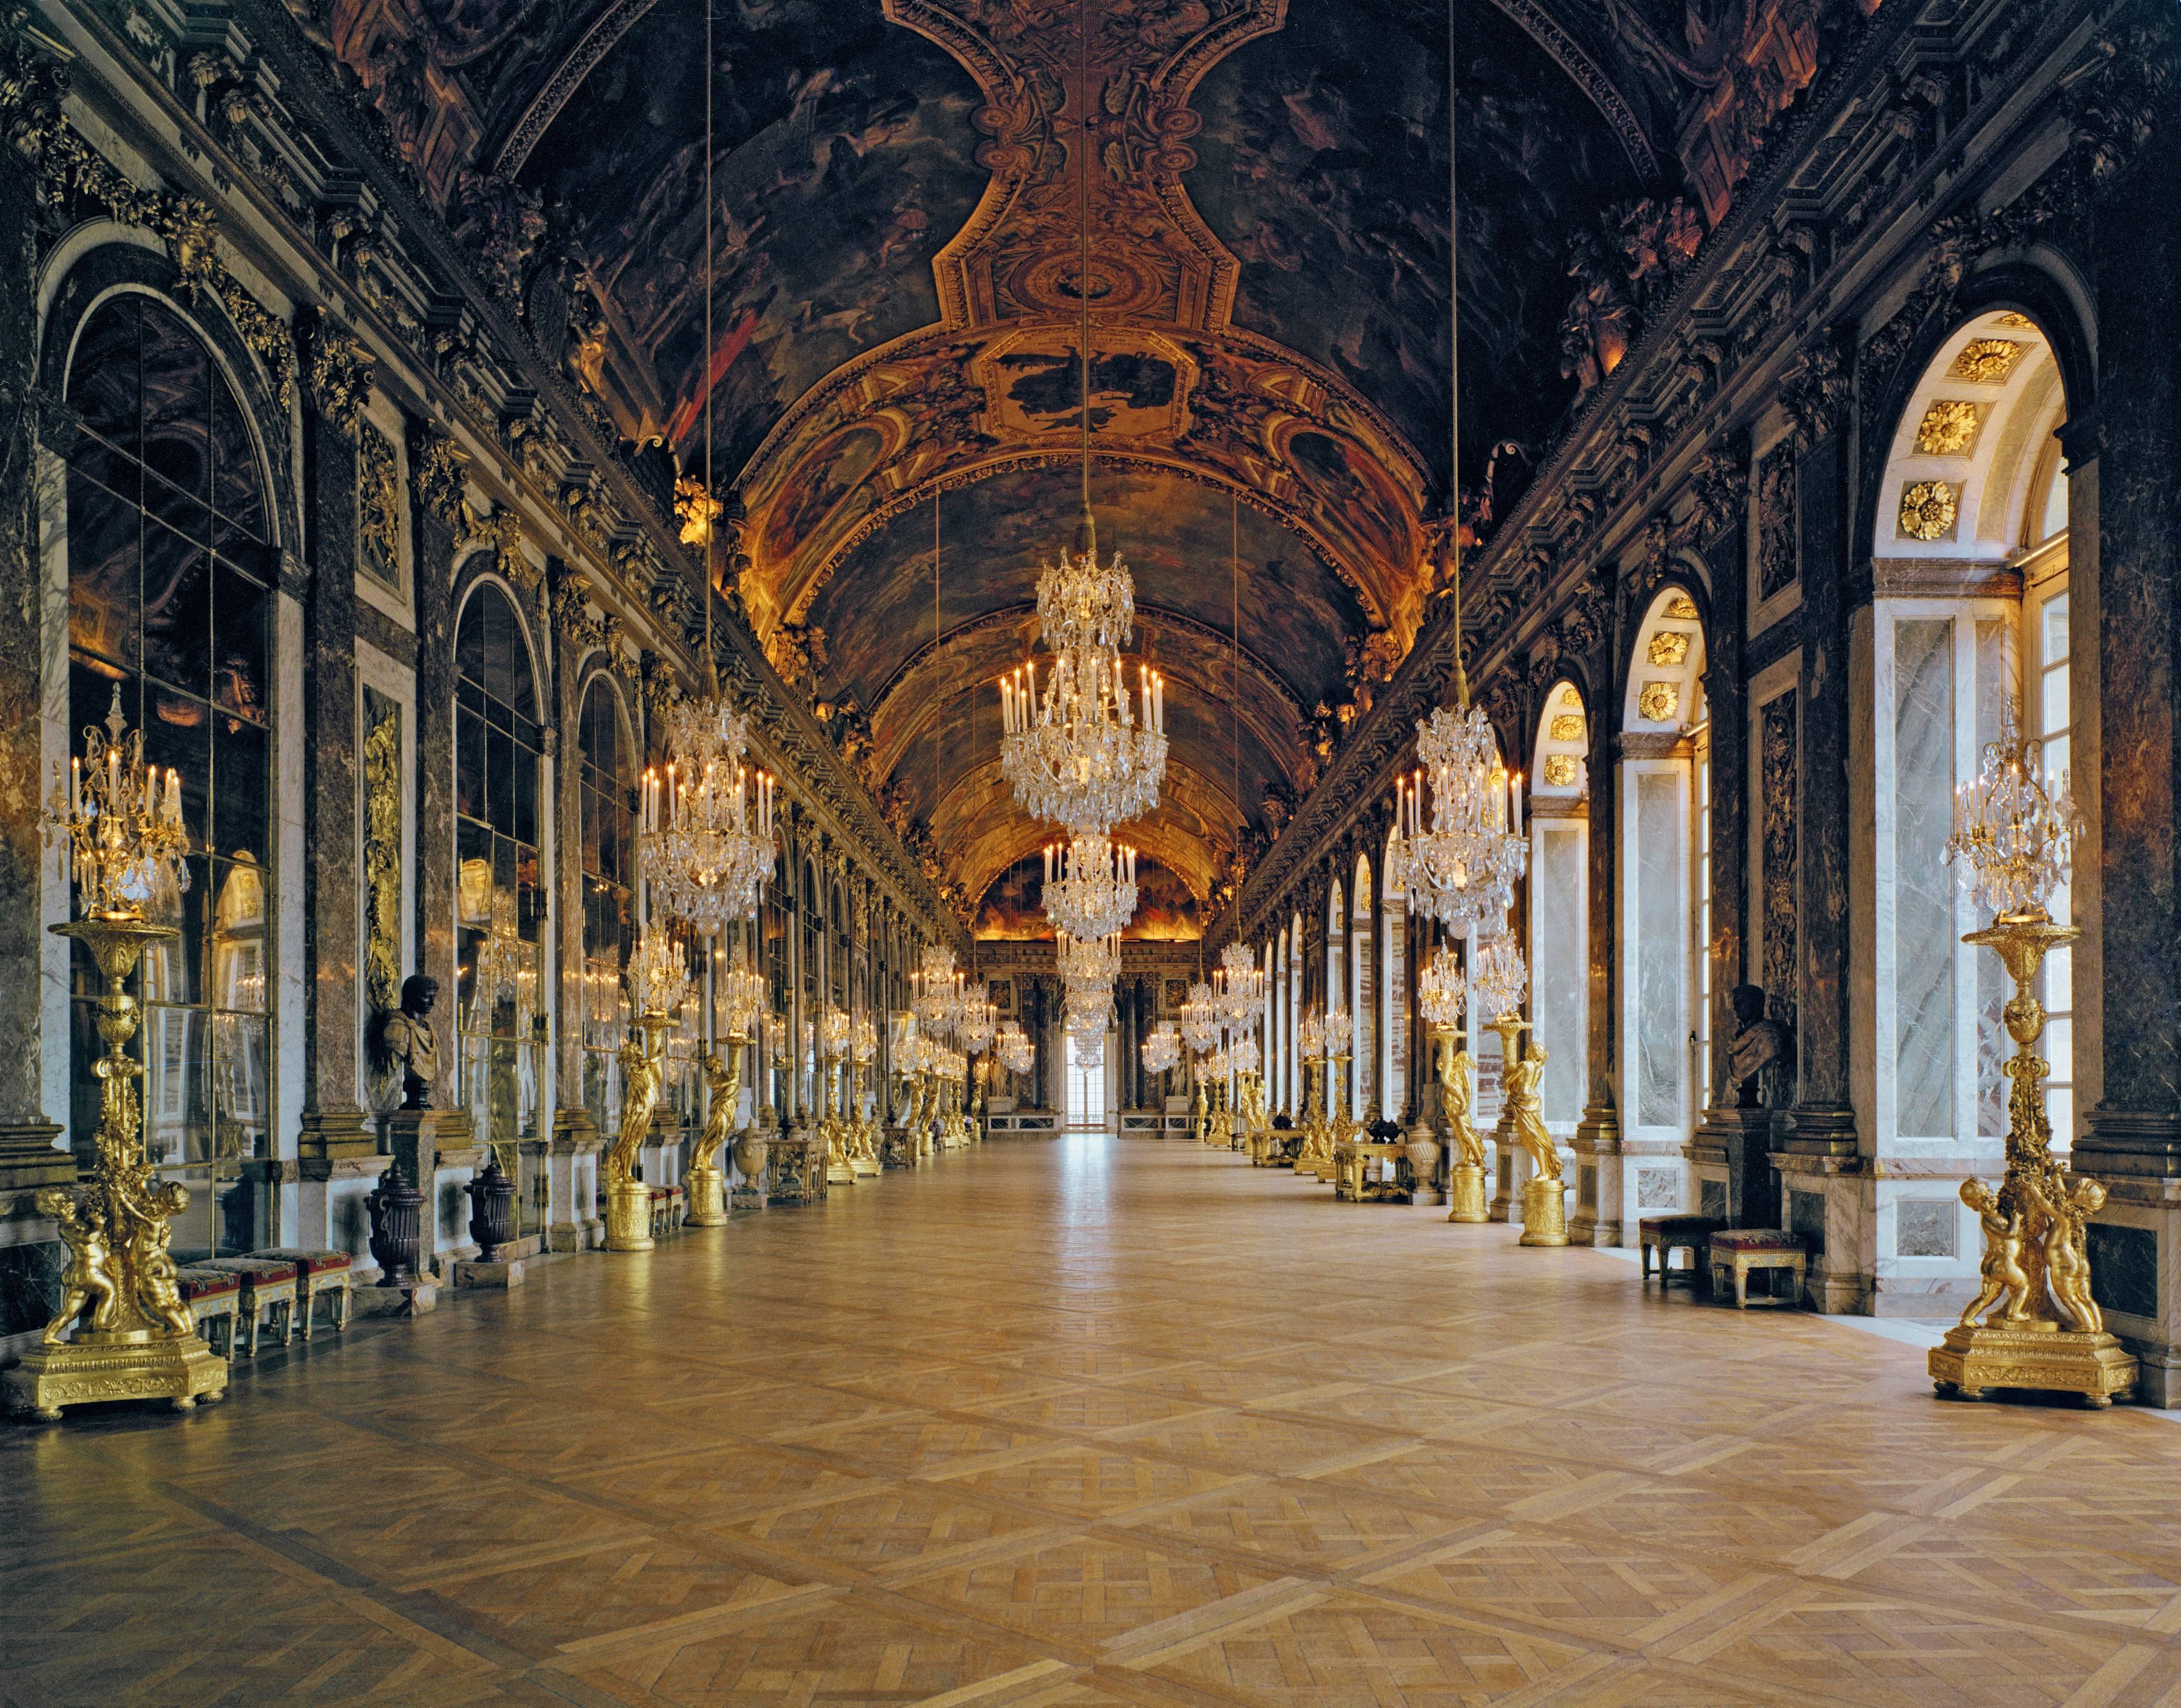 La Galerie des Glaces, Versailles - Photograph by Robert Polidori